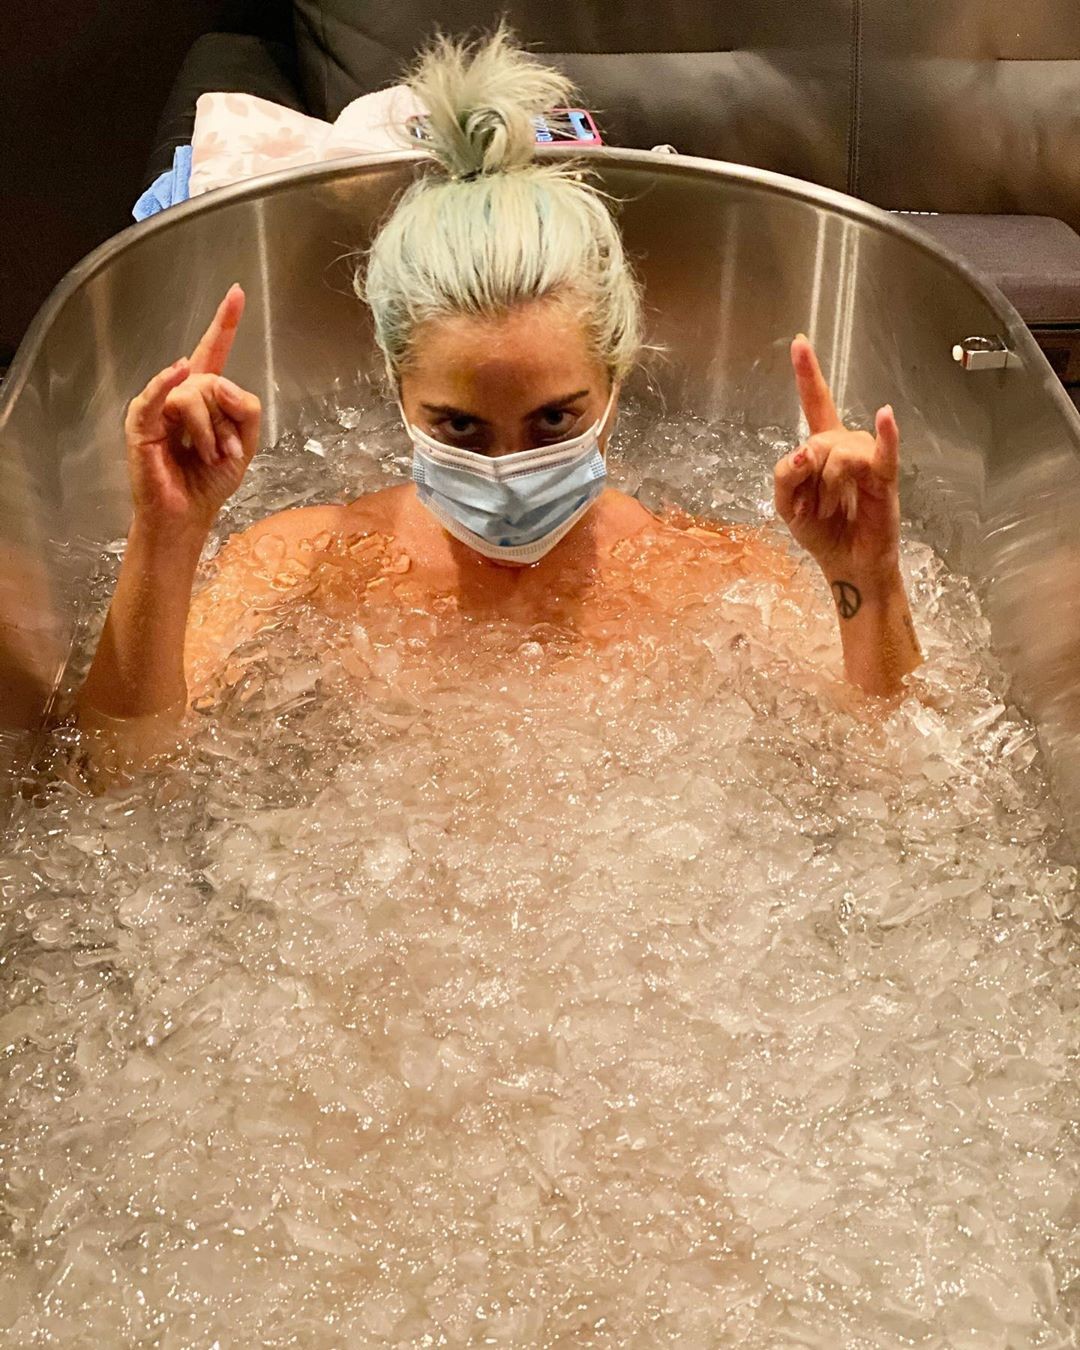 Lady Gaga em banheira de gelo (Foto: Reprodução/Instagram)